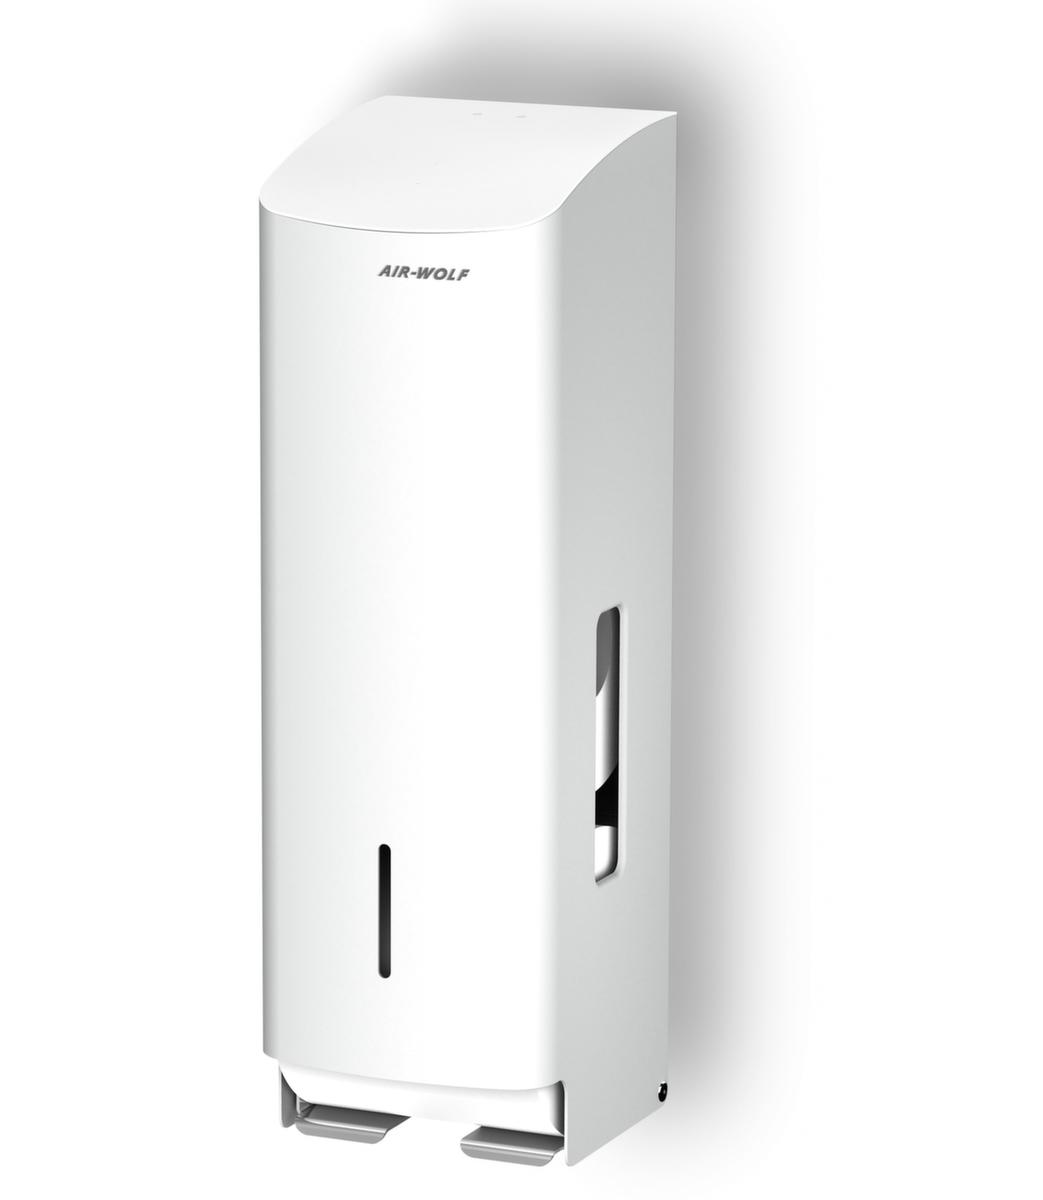 AIR-WOLF Toilettenpapierspender Gamma für 3 Rollen, Edelstahl, weiß Standard 1 ZOOM